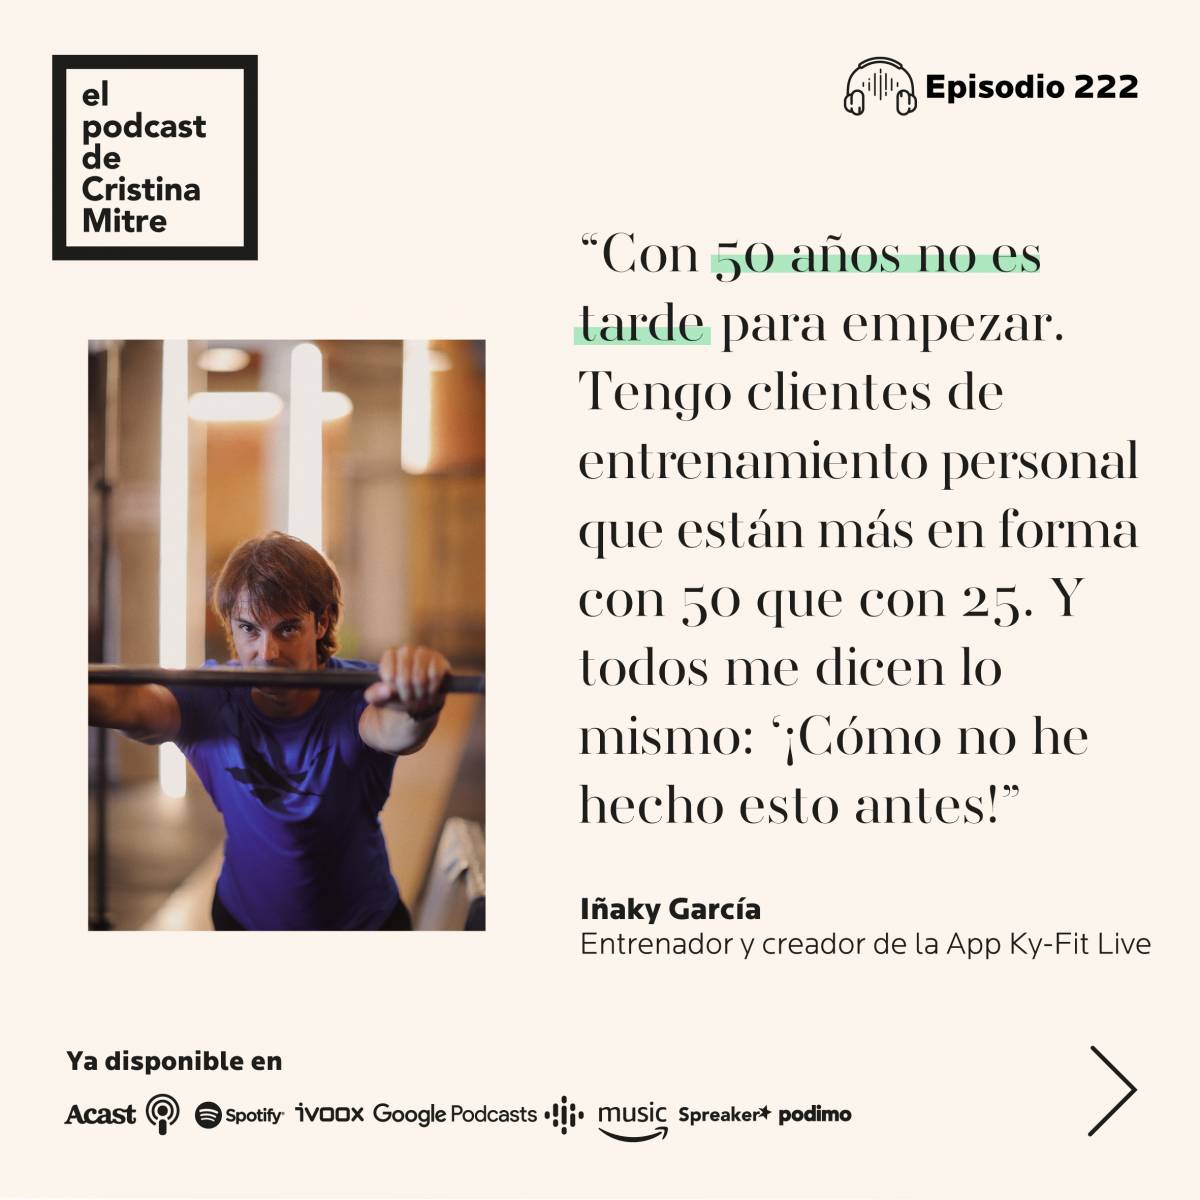 El podcast de Cristina Mitre Iñaky Garcia gimnasio